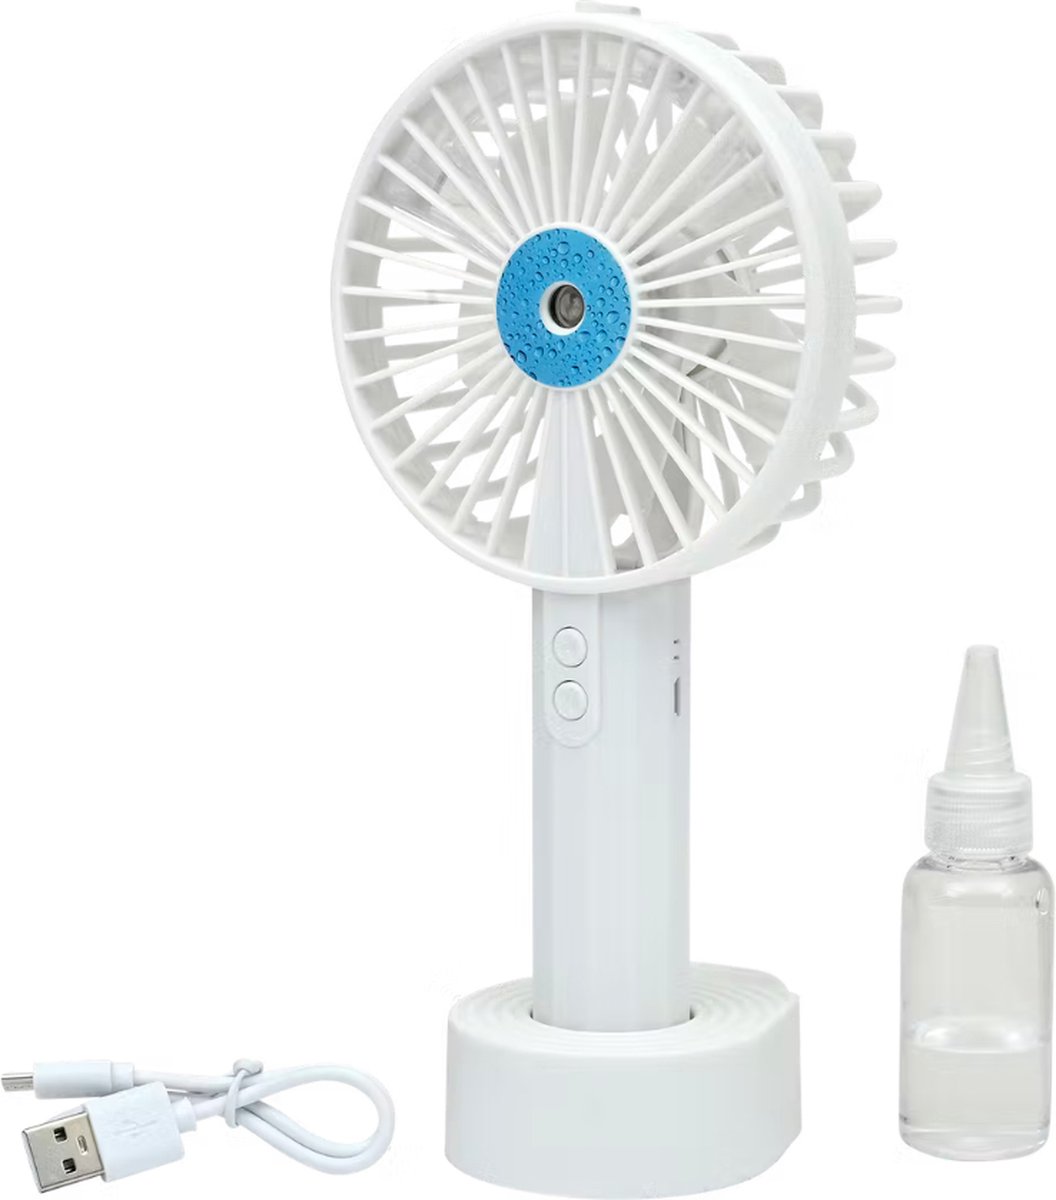 Mini ventilateur brumisateur Bleu : Chez Rentreediscount Cadeaux & Jeux